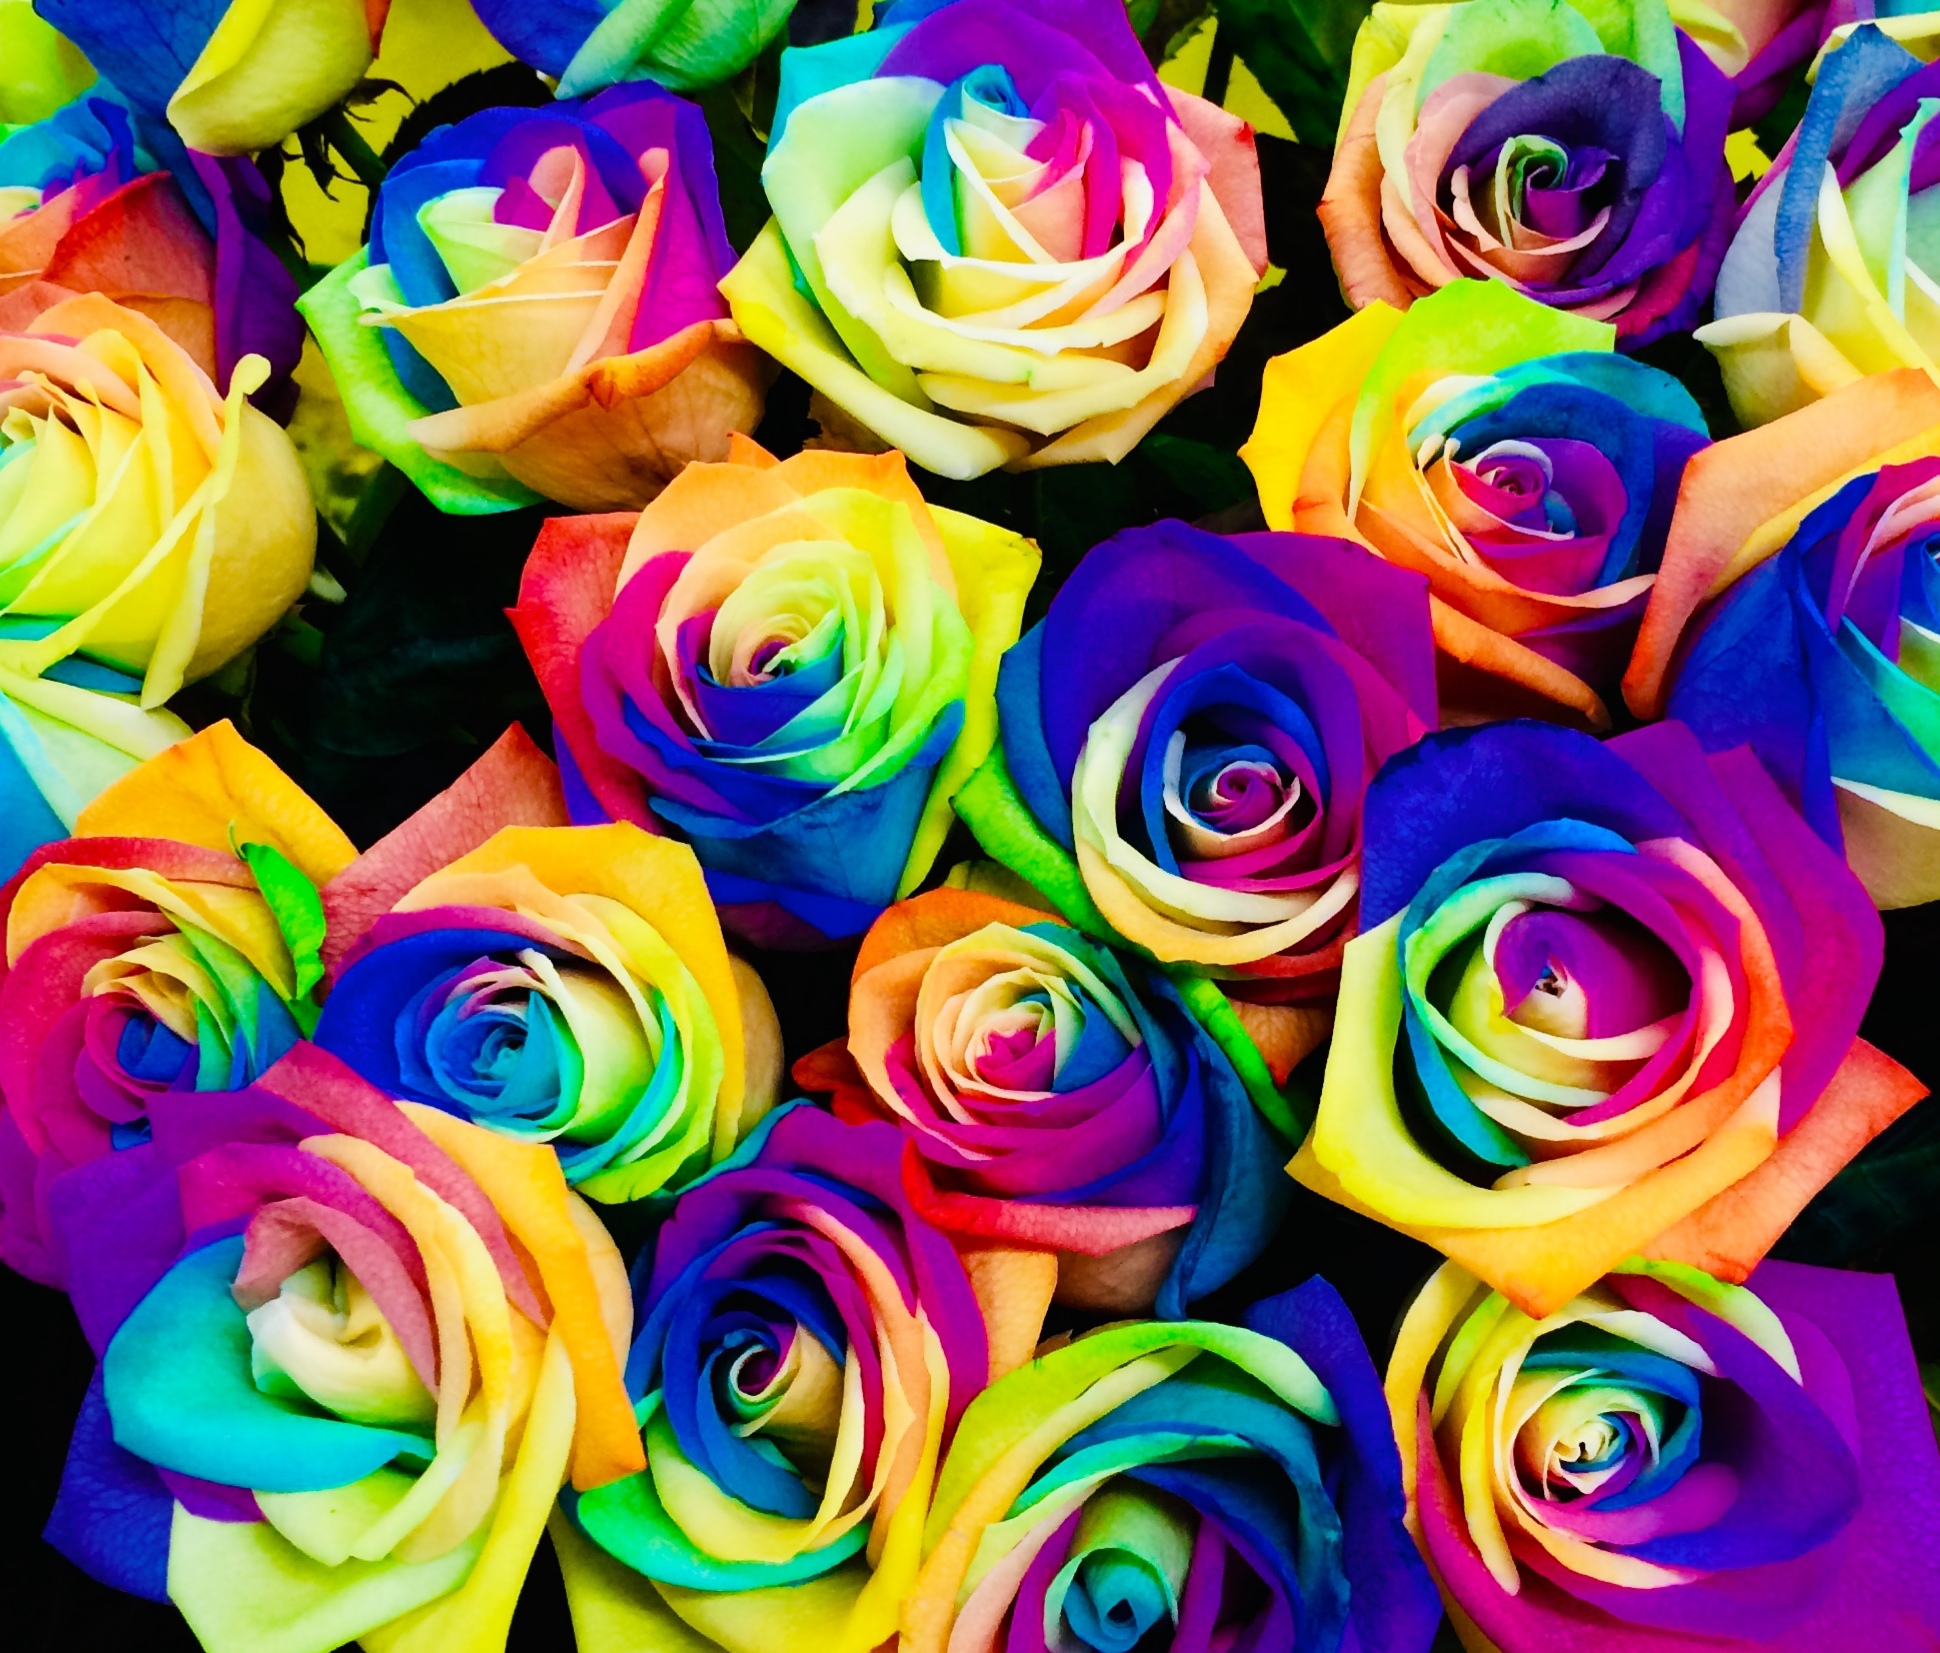 花屋 Hanaya １００本バラ レインボーローズ プロポーズの花束 記念日の花束 結婚記念日の花束 特別な花束 １００本 １０８本 バラ ローズ 薔薇 七色のバラ 七色の薔薇 Rainbowrose Rainbowrose